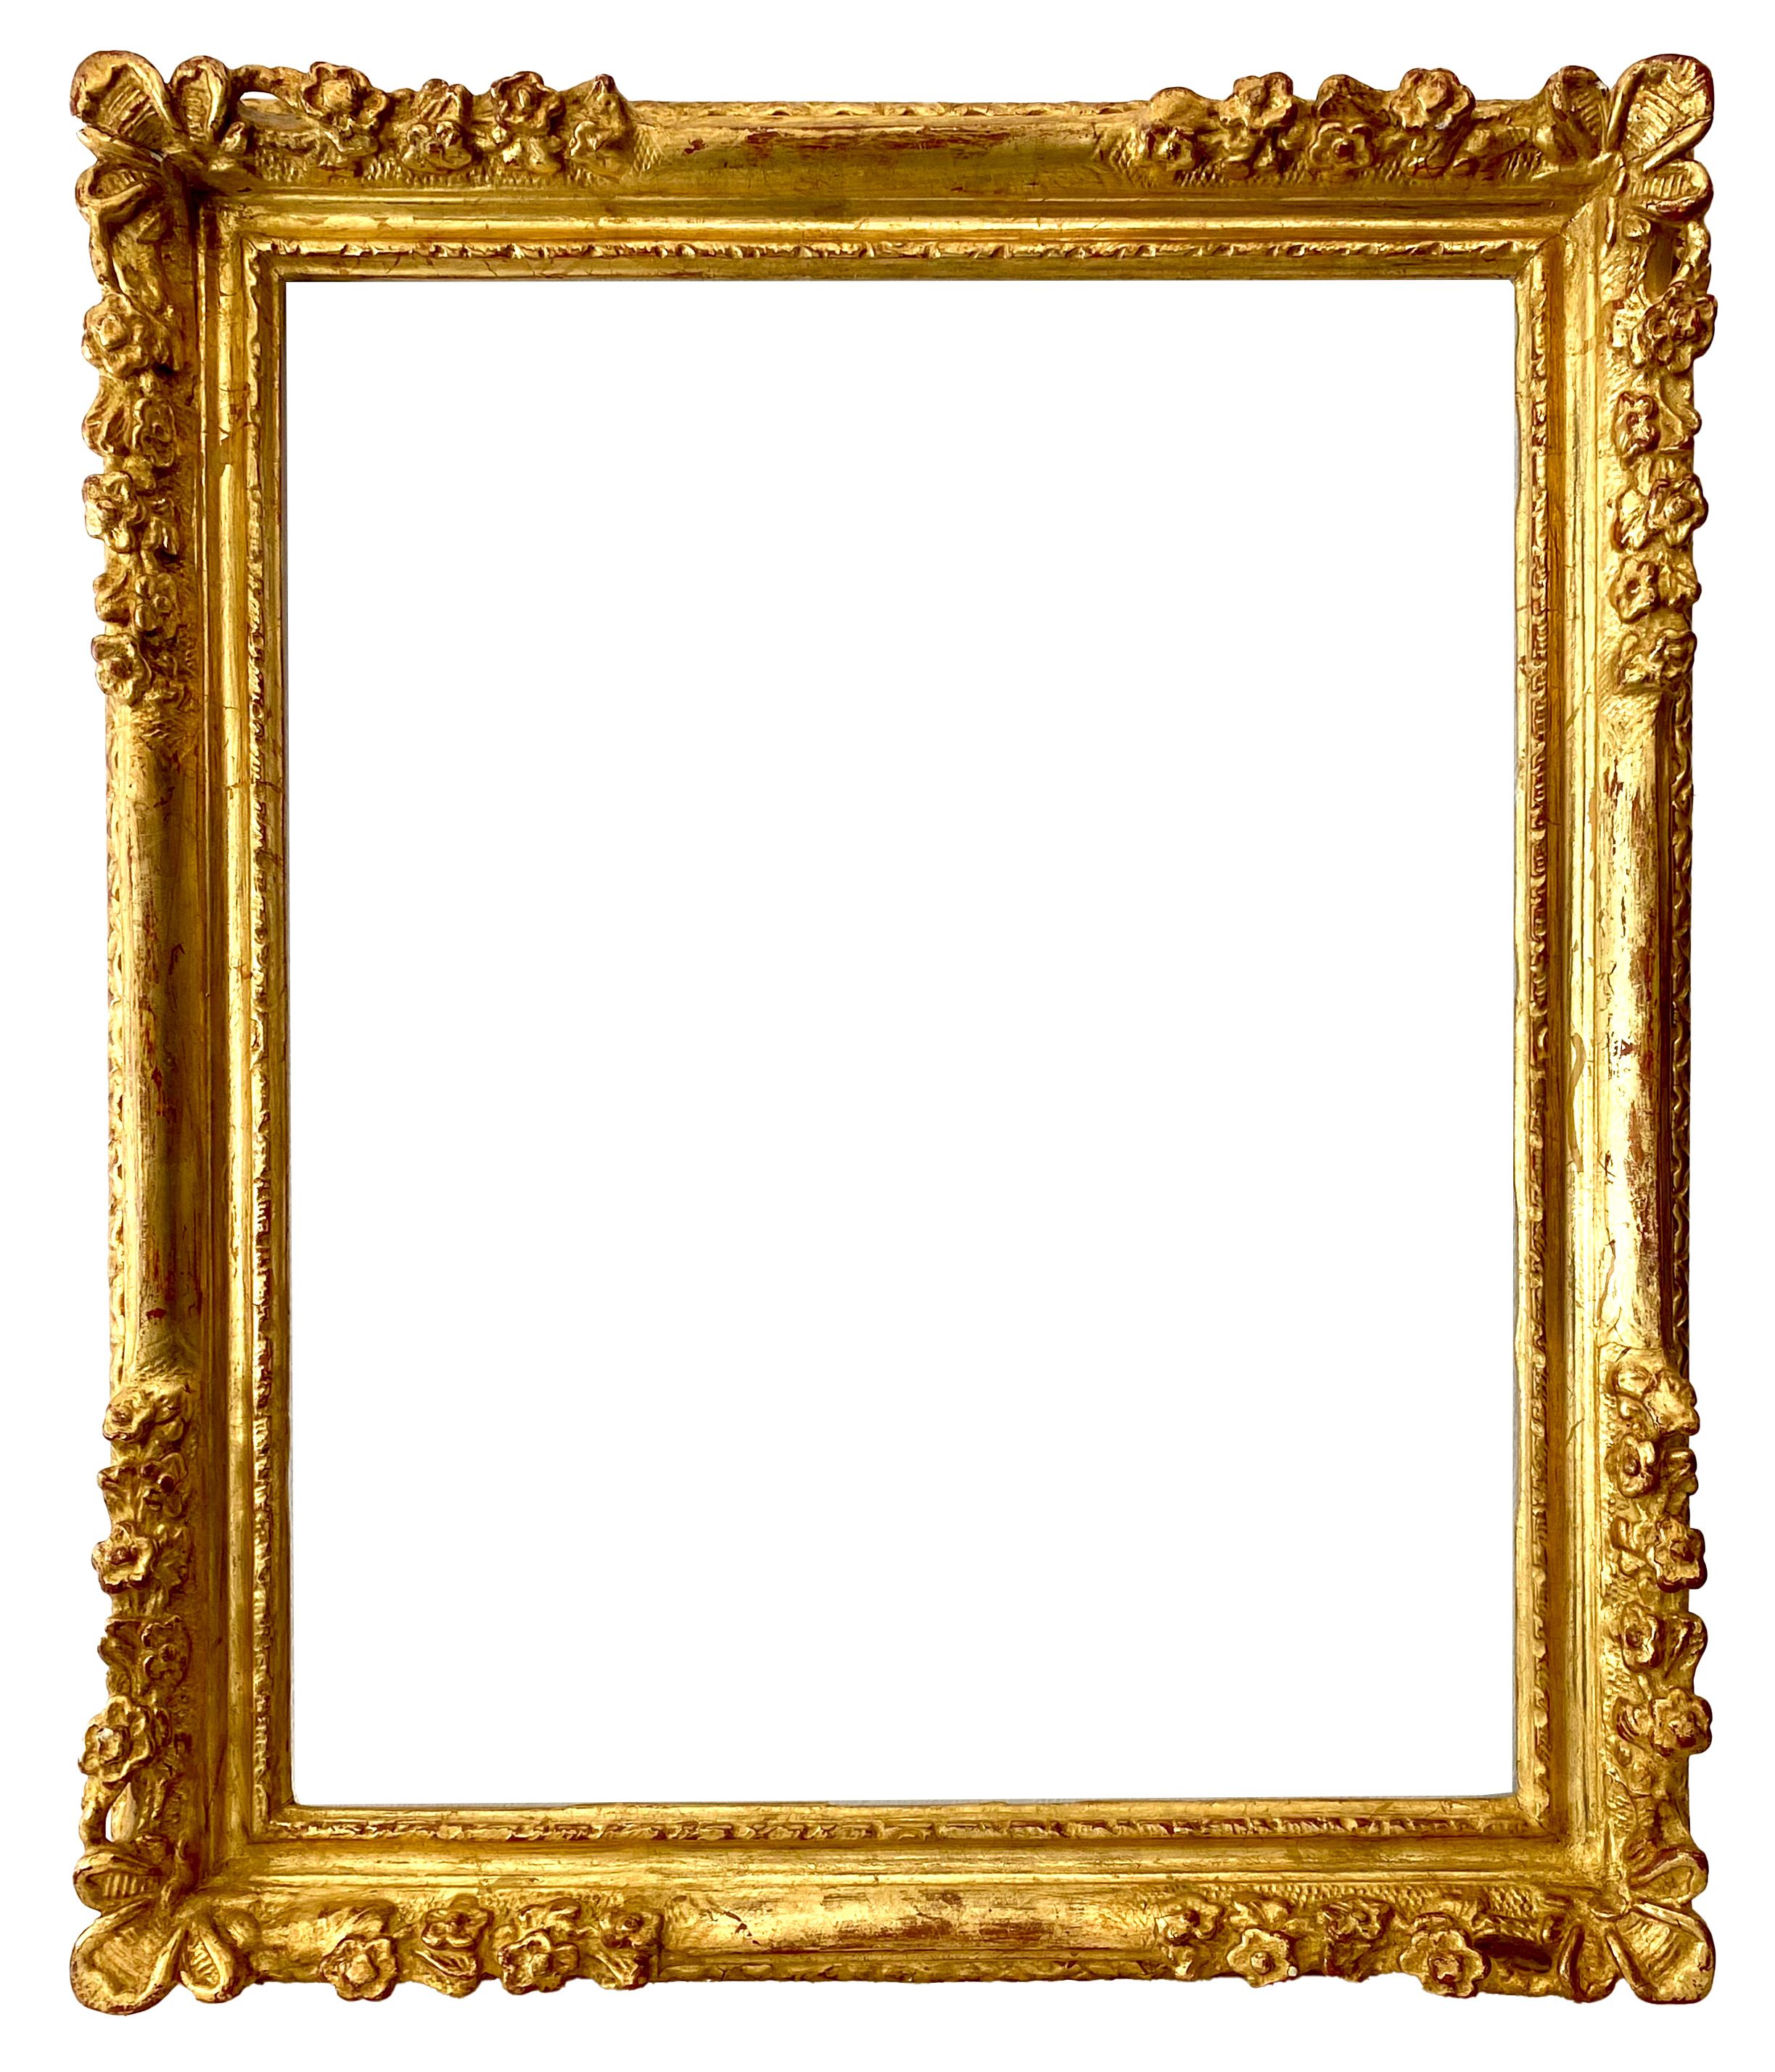 Cadre de style Louis XIV - 42,00 x 34,00 - REF - 1701